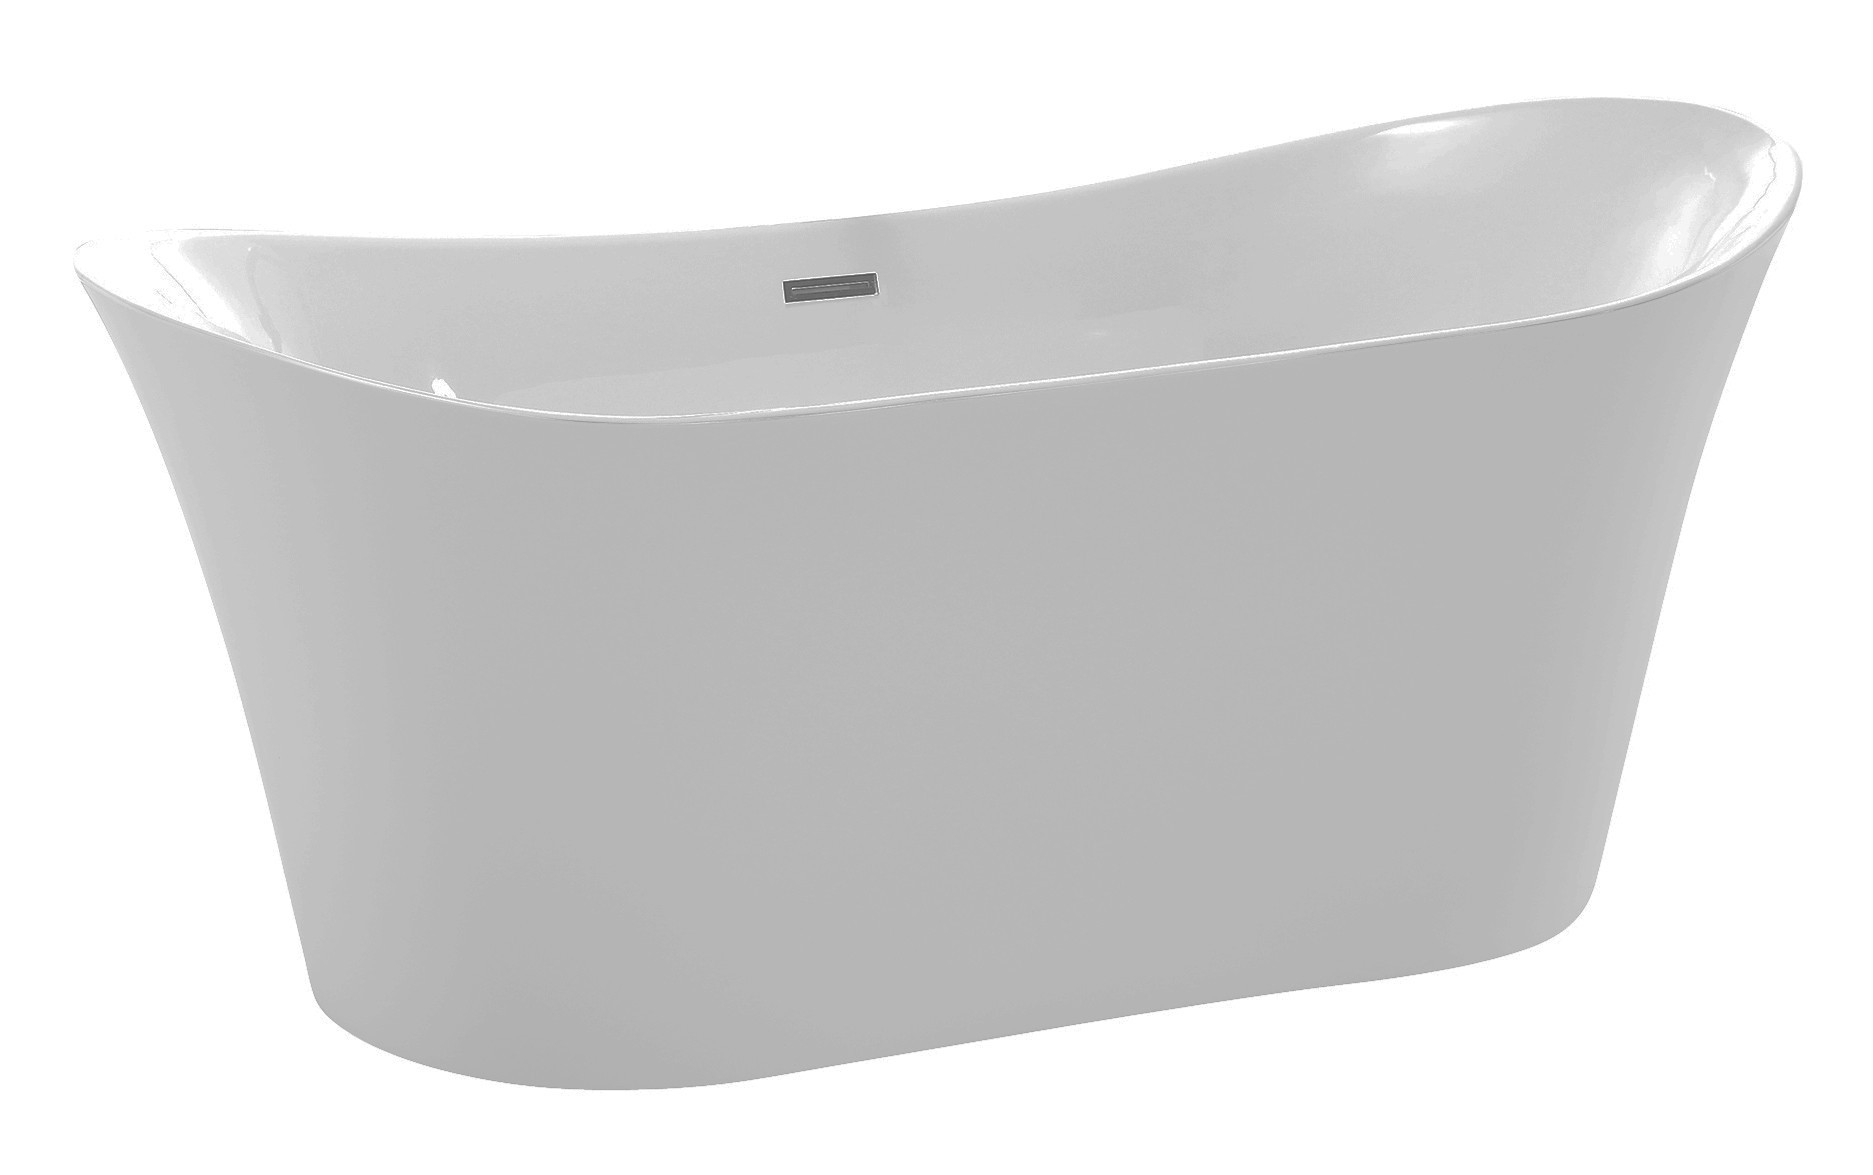 Anzzi FT-AZ096 Eft Series 5.58 ft. Freestanding Bathtub in White